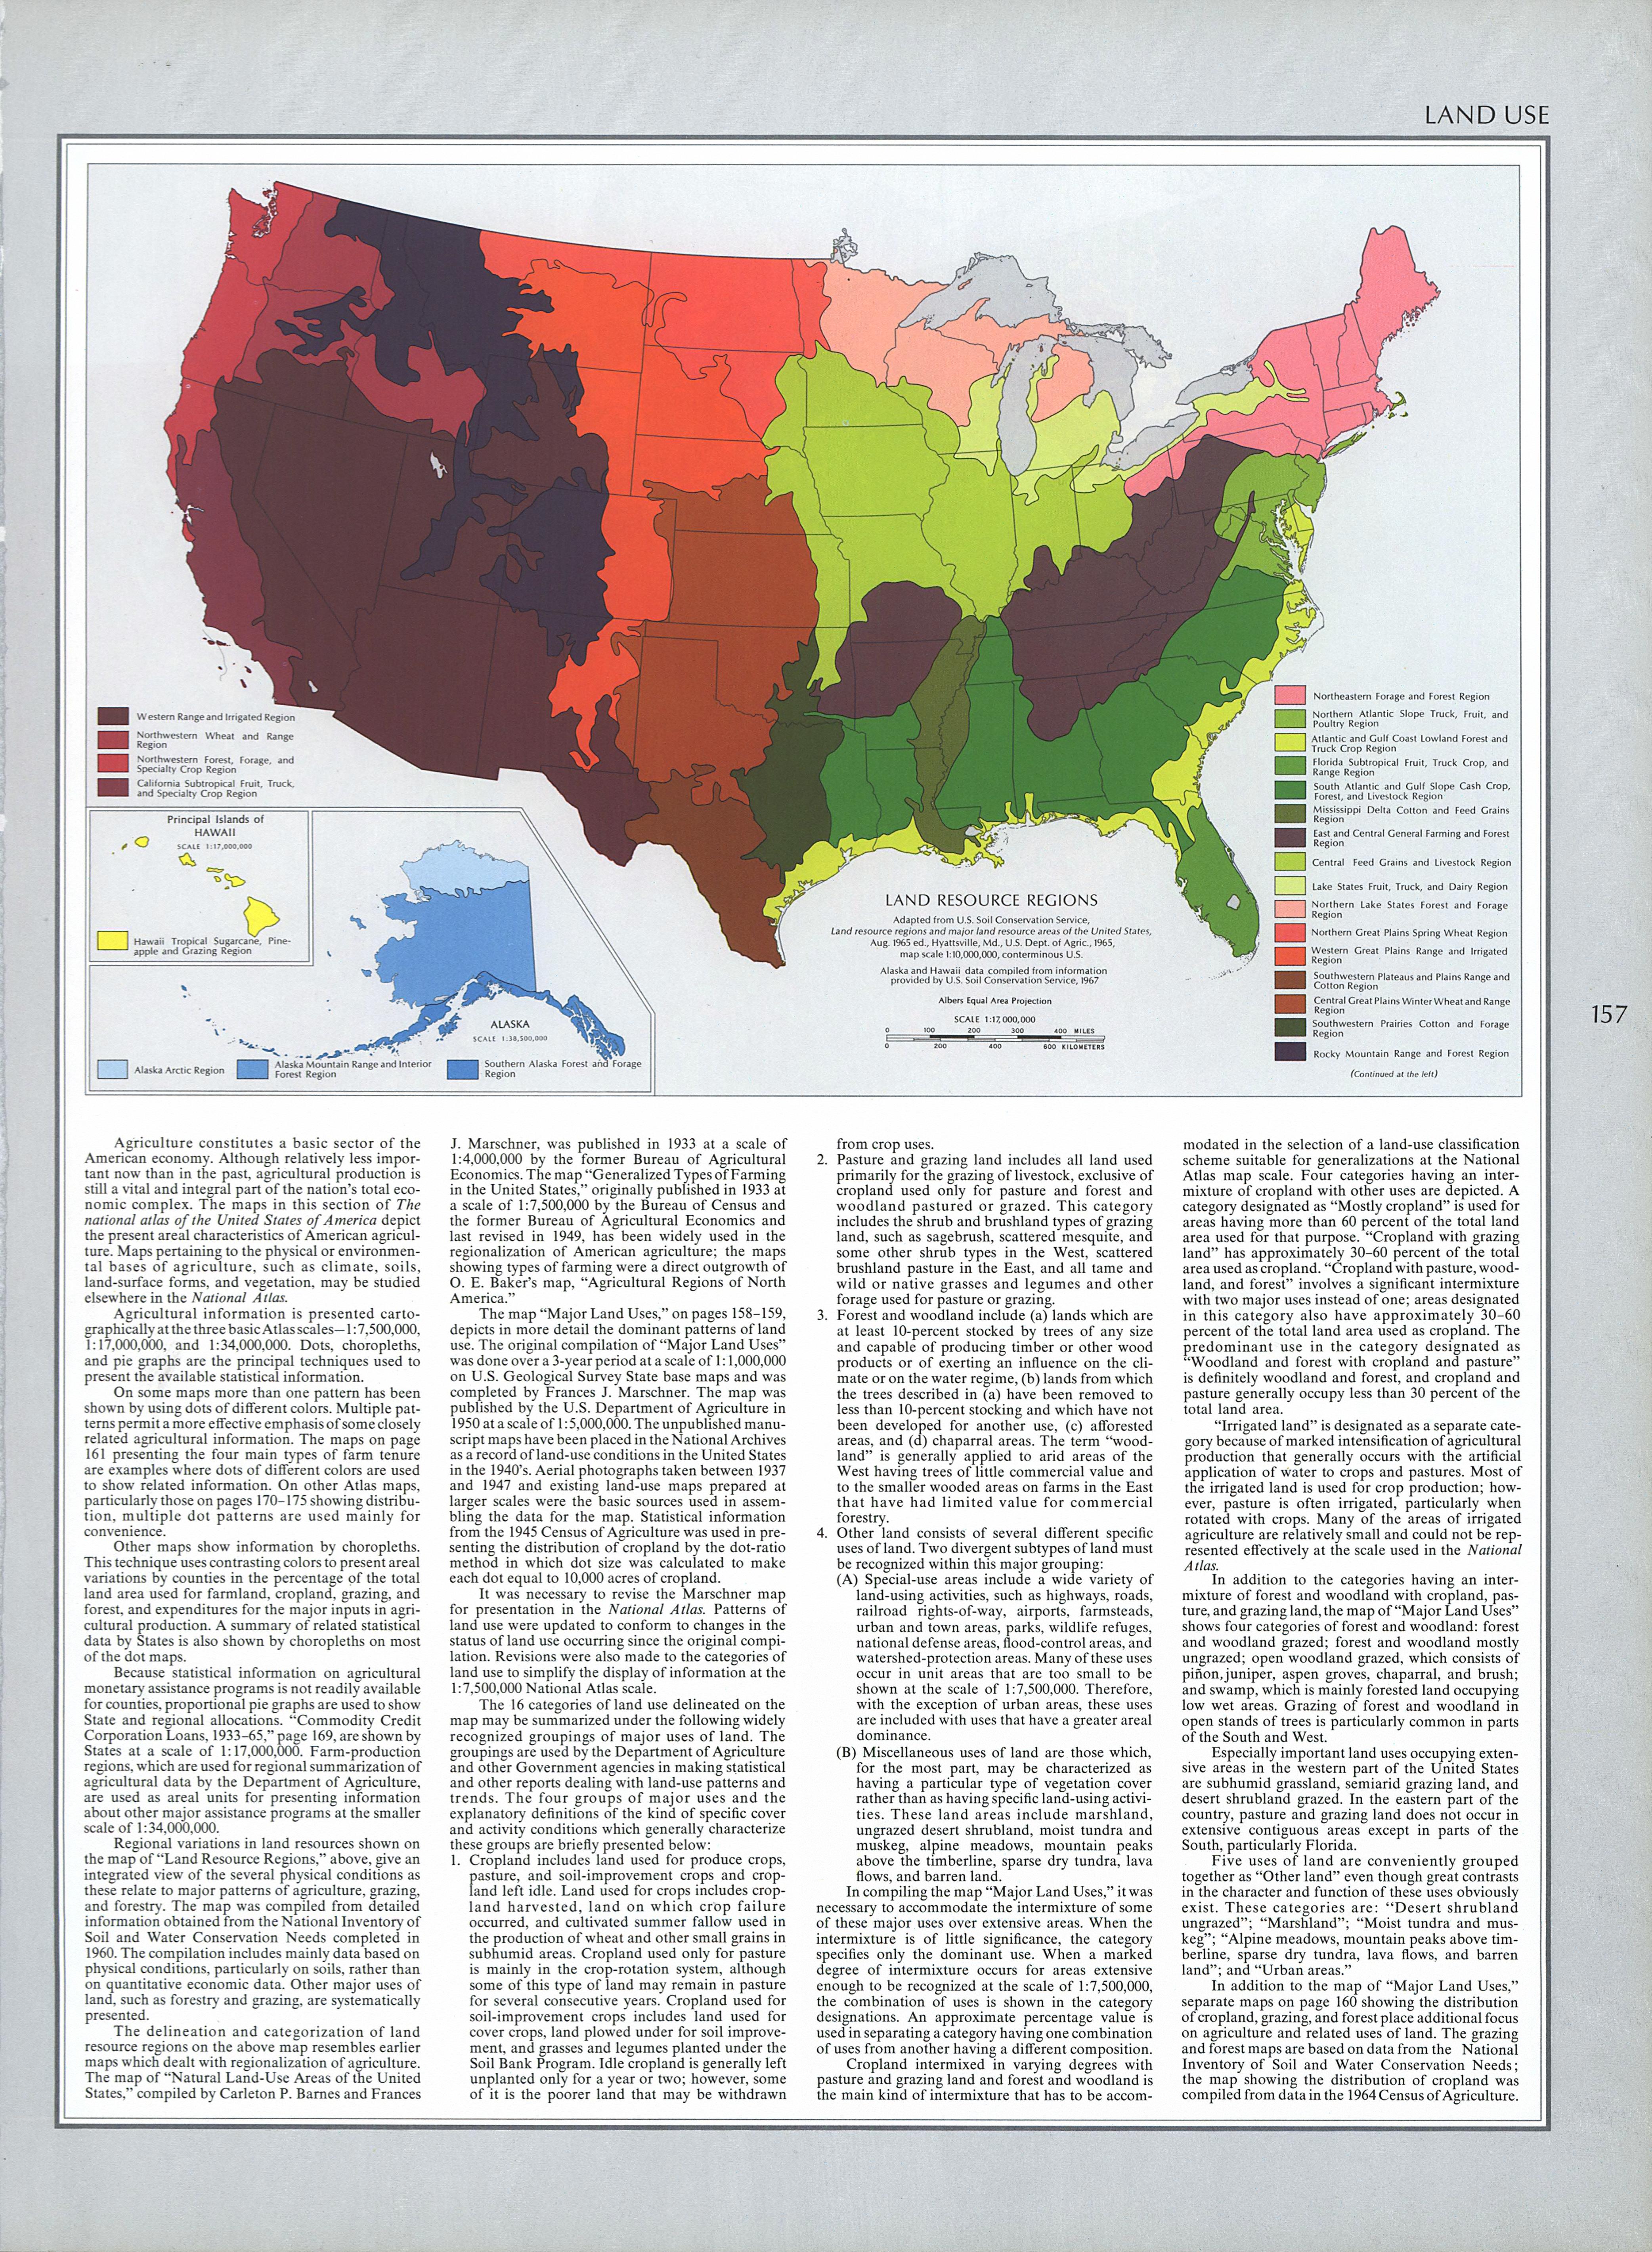 Mapa del Uso de la Tierra por Región en Estados Unidos